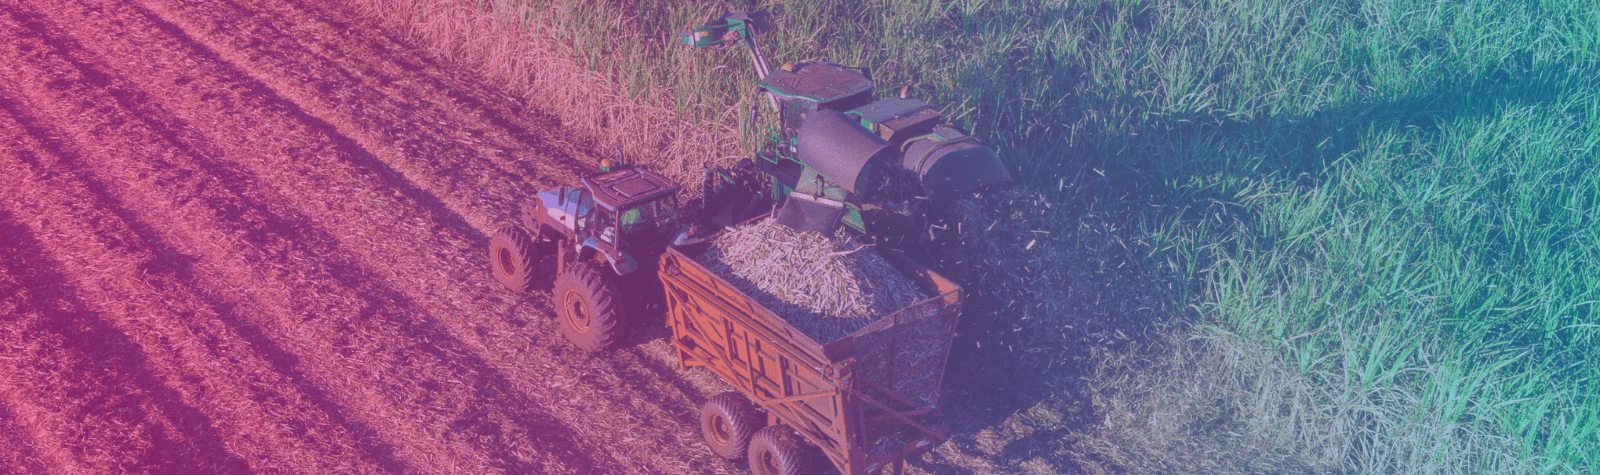 Máquina agrícola para gestão de riscos no agronegócio